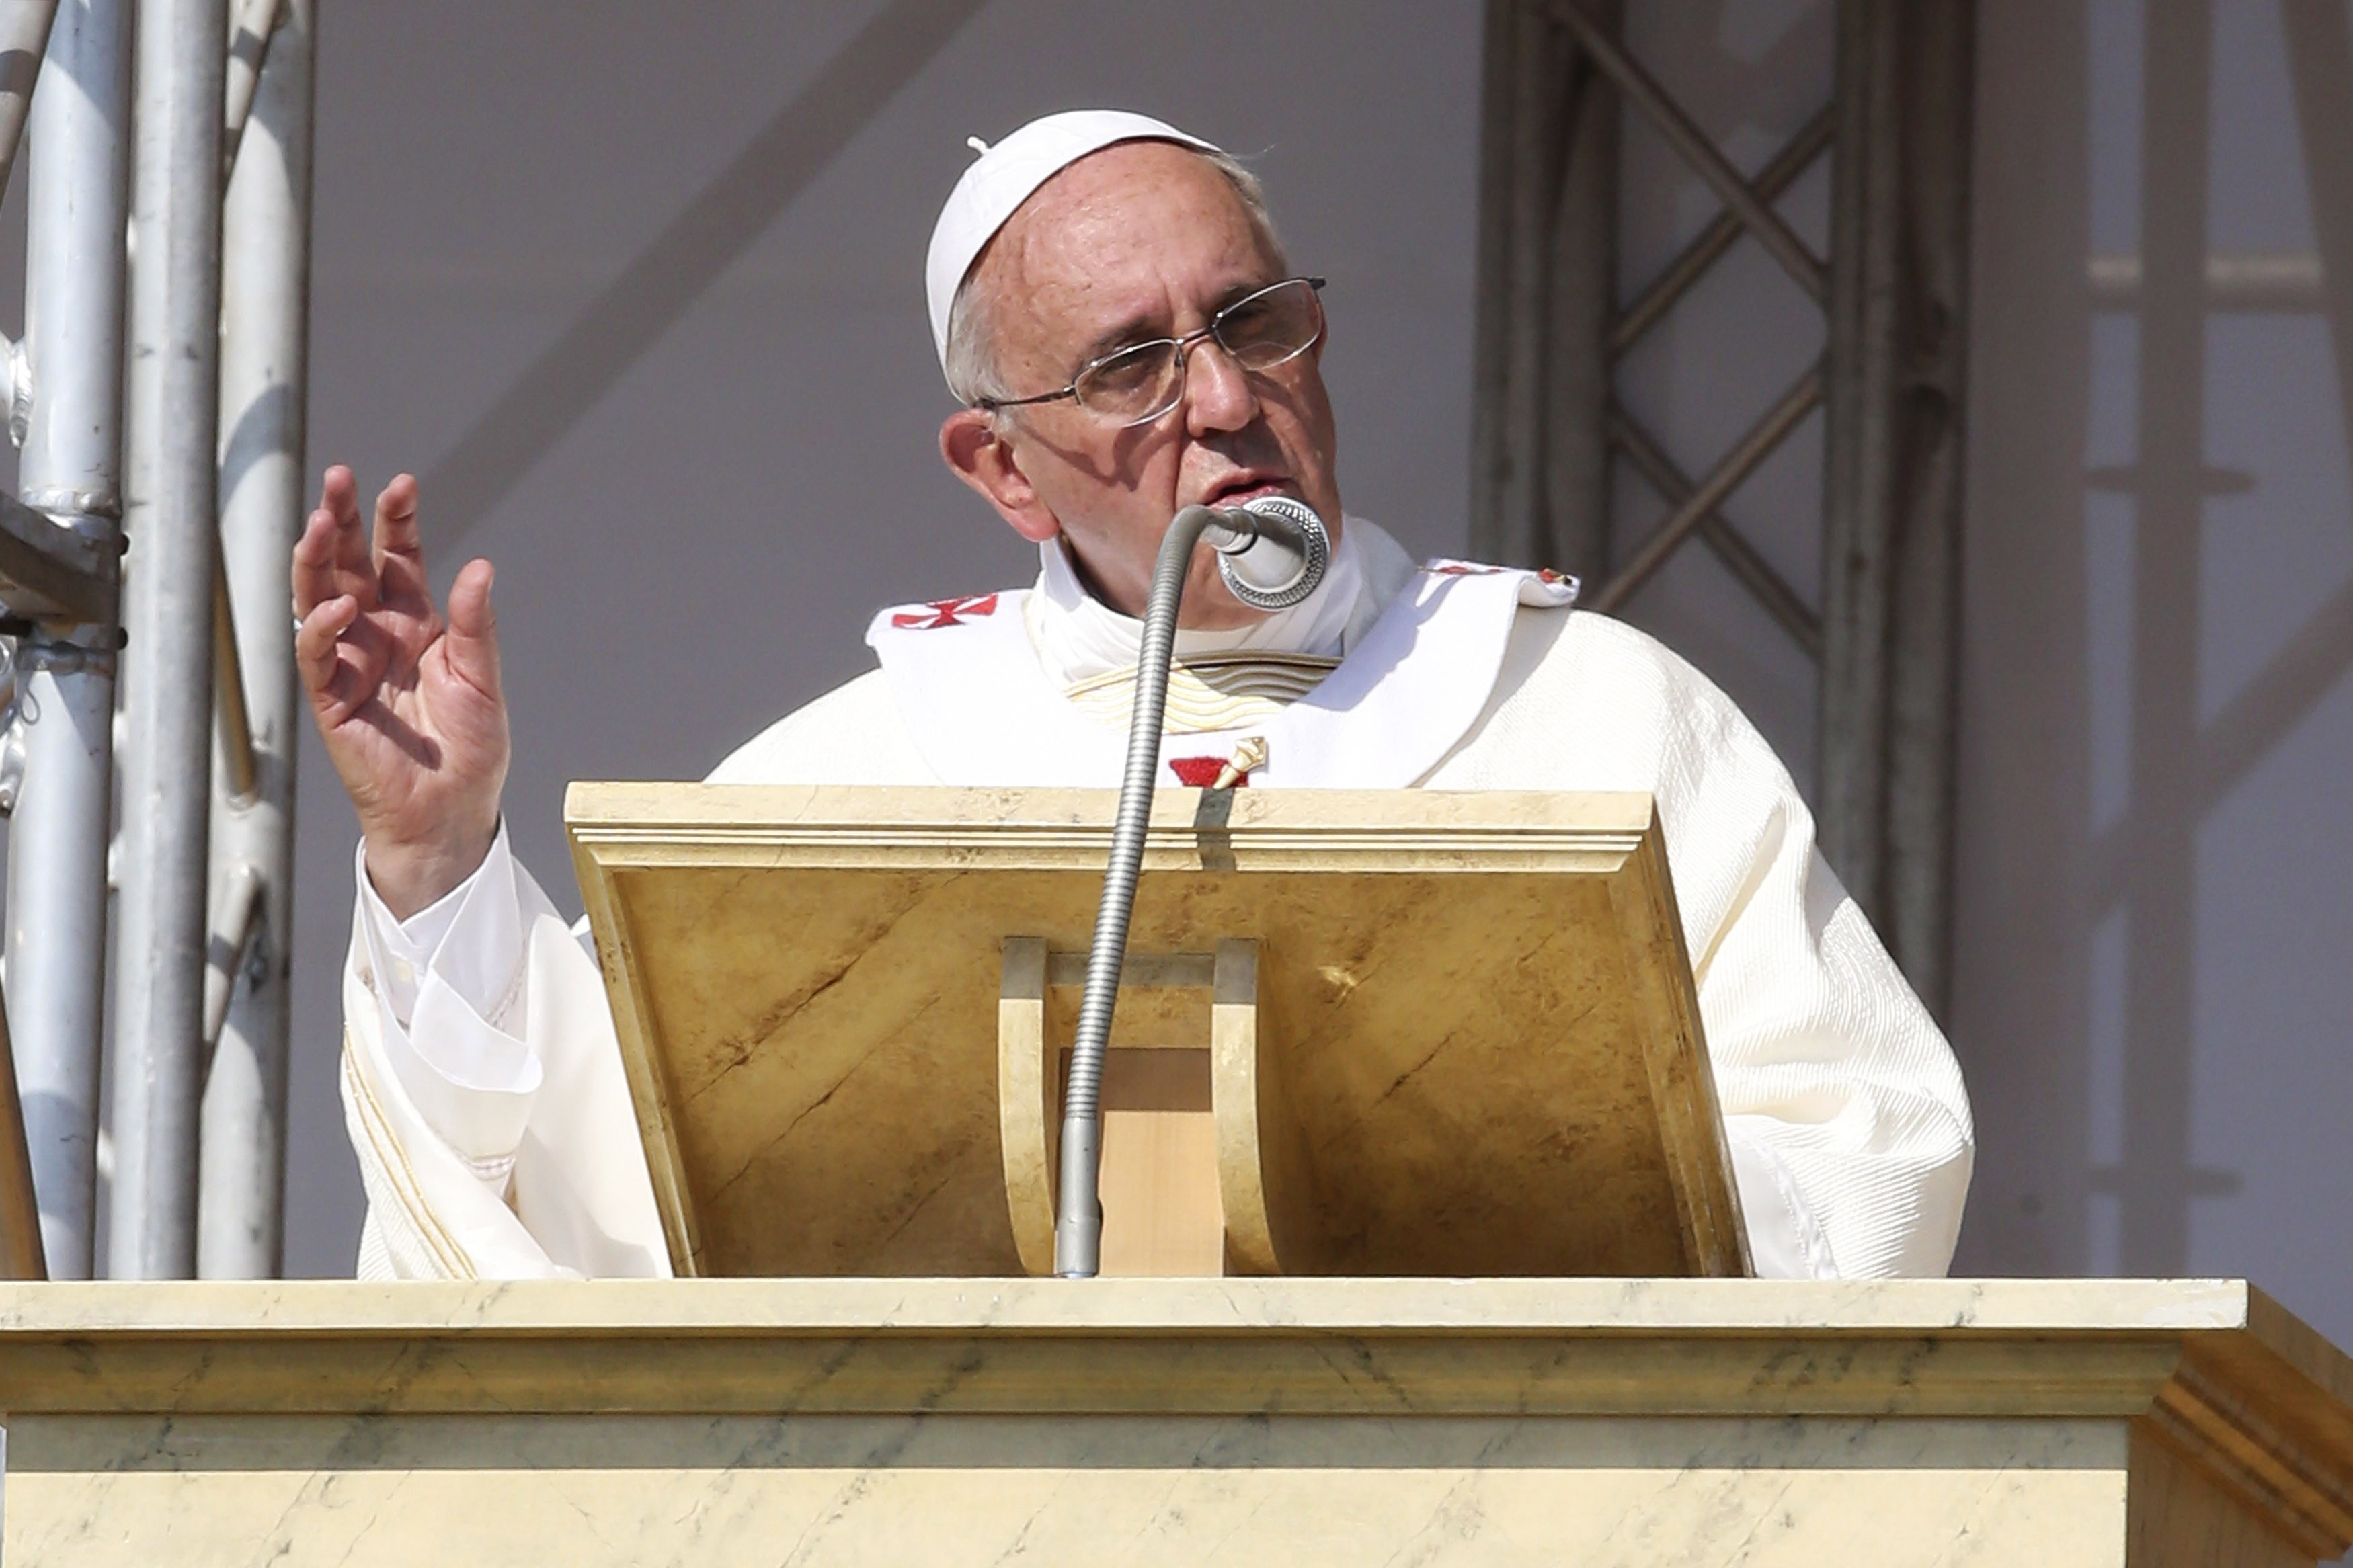 Νέο tweet του πάπα Φραγκίσκου: Θα ήθελα να δω όλους με μια αξιοπρεπή δουλειά